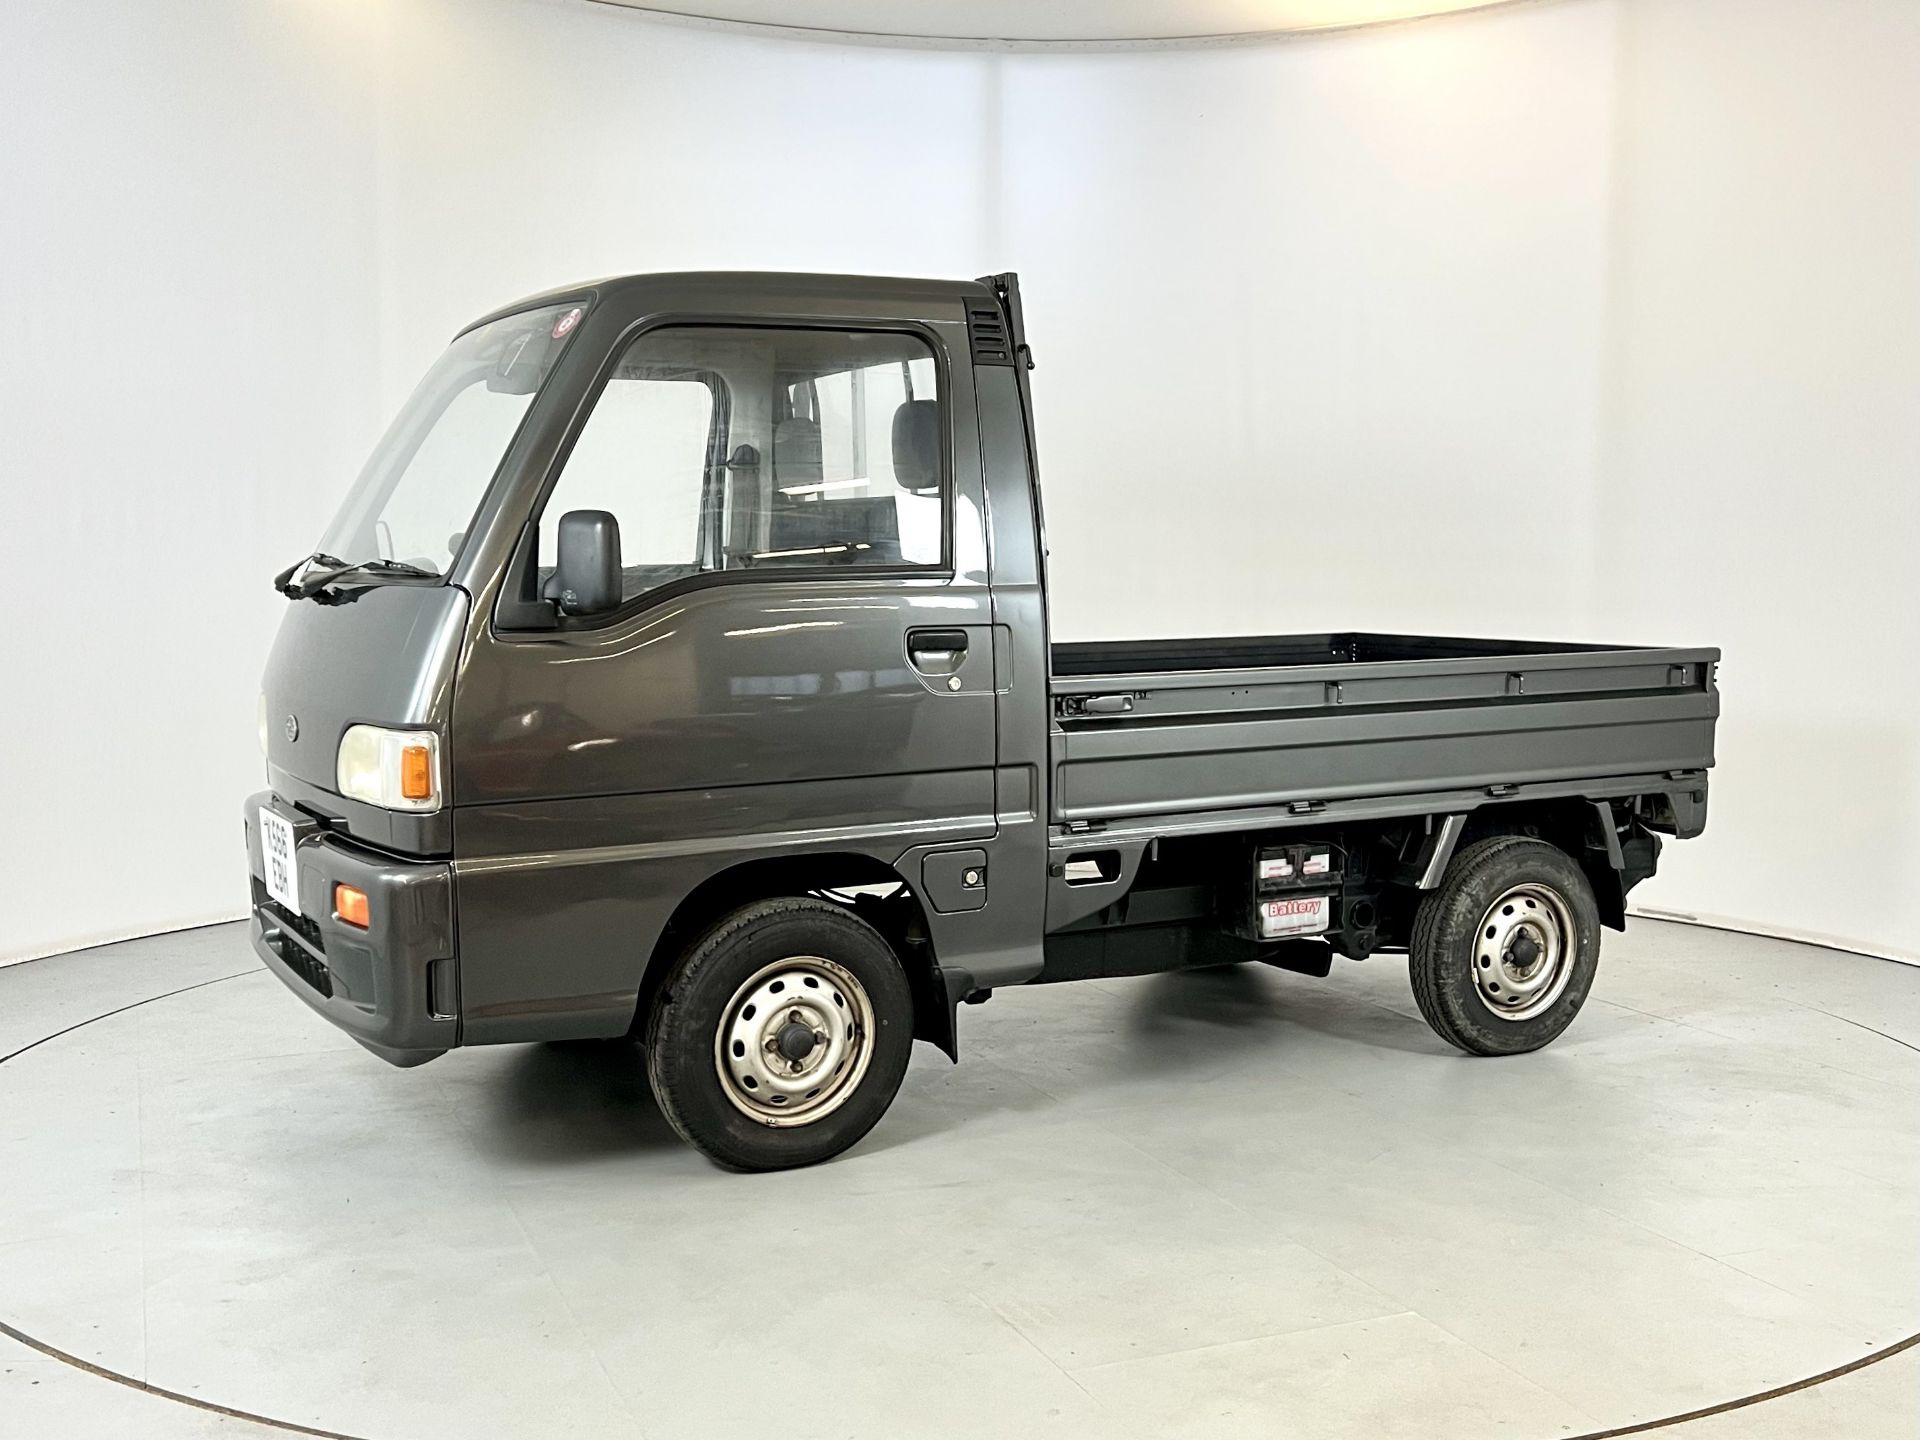 Subaru Sambar - Image 4 of 27